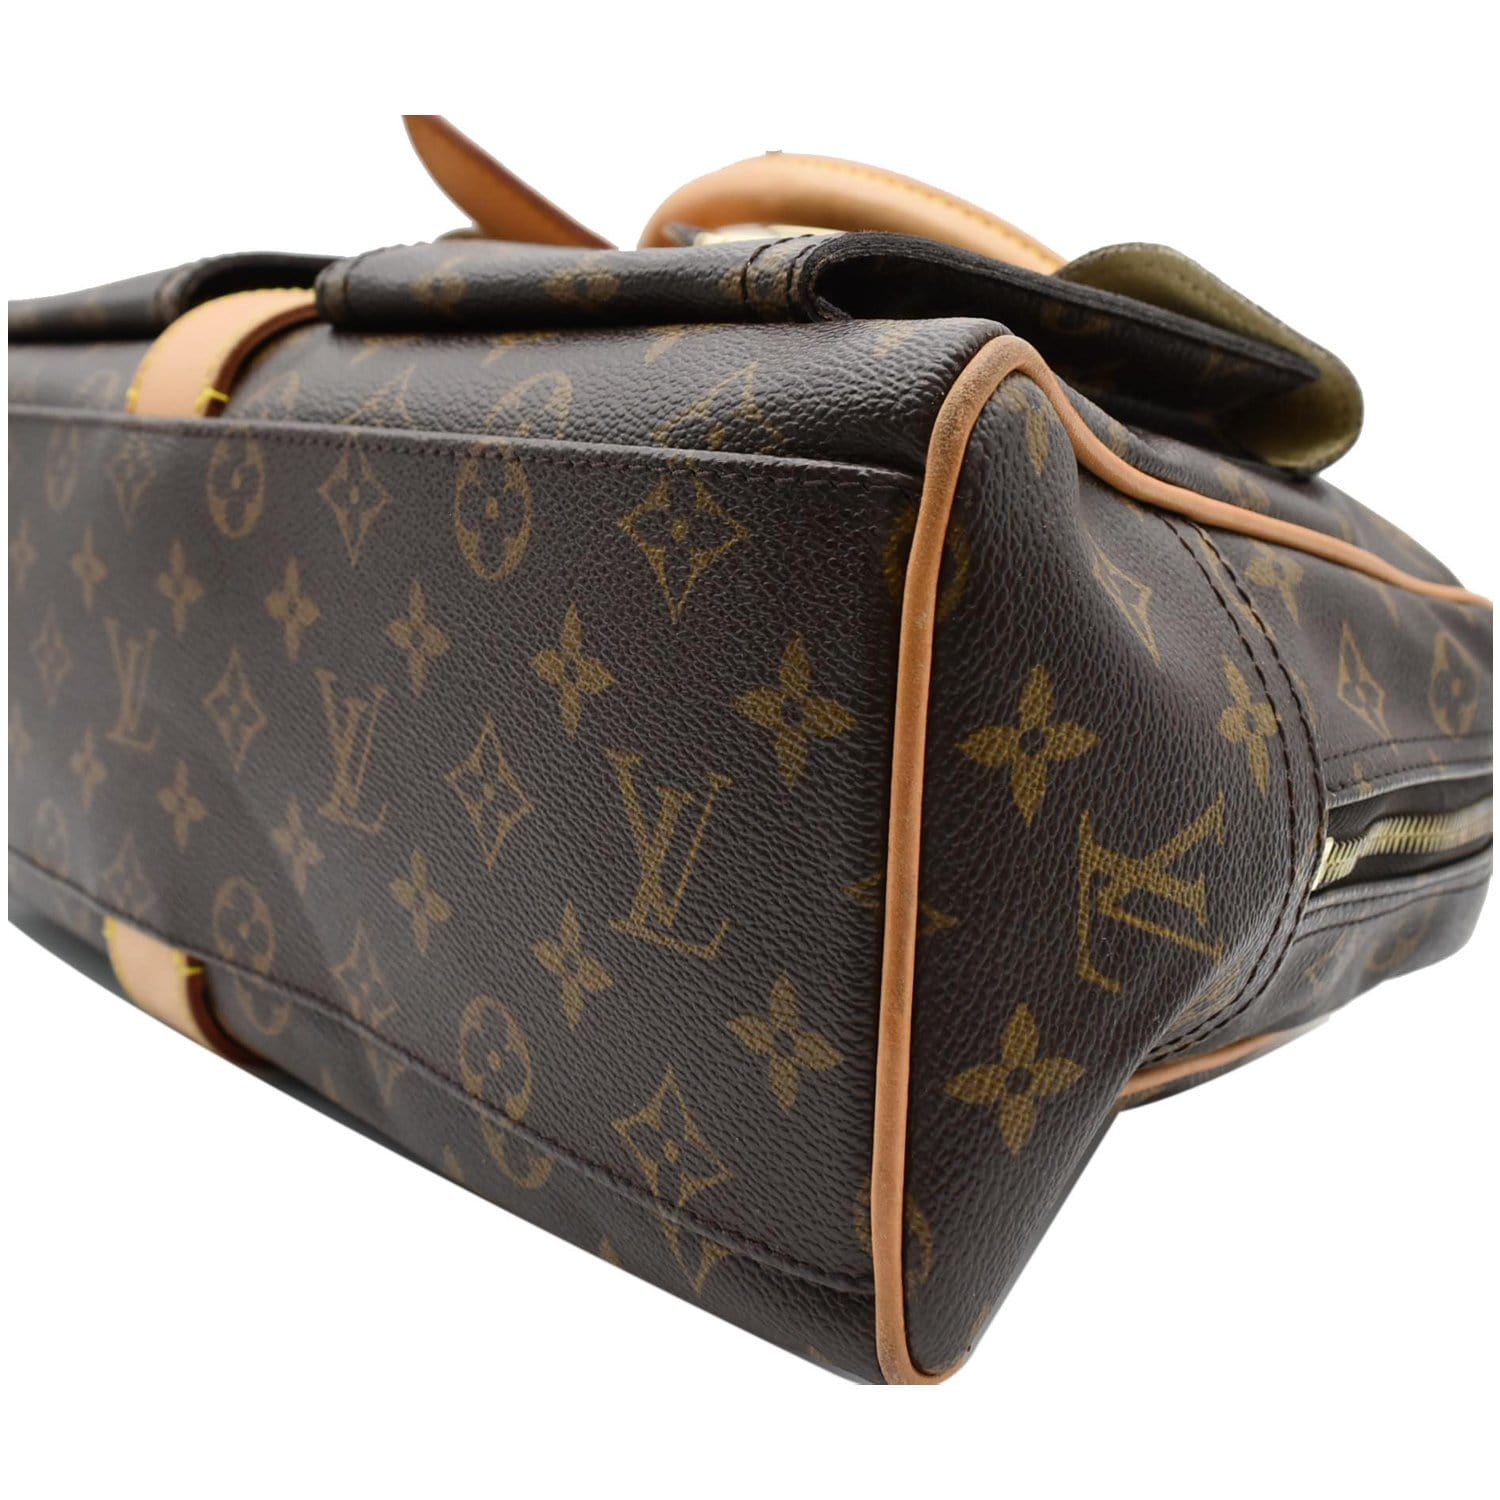 Louis Vuitton Manhattan in Monogram Handbag - Authentic Pre-Owned Designer Handbags